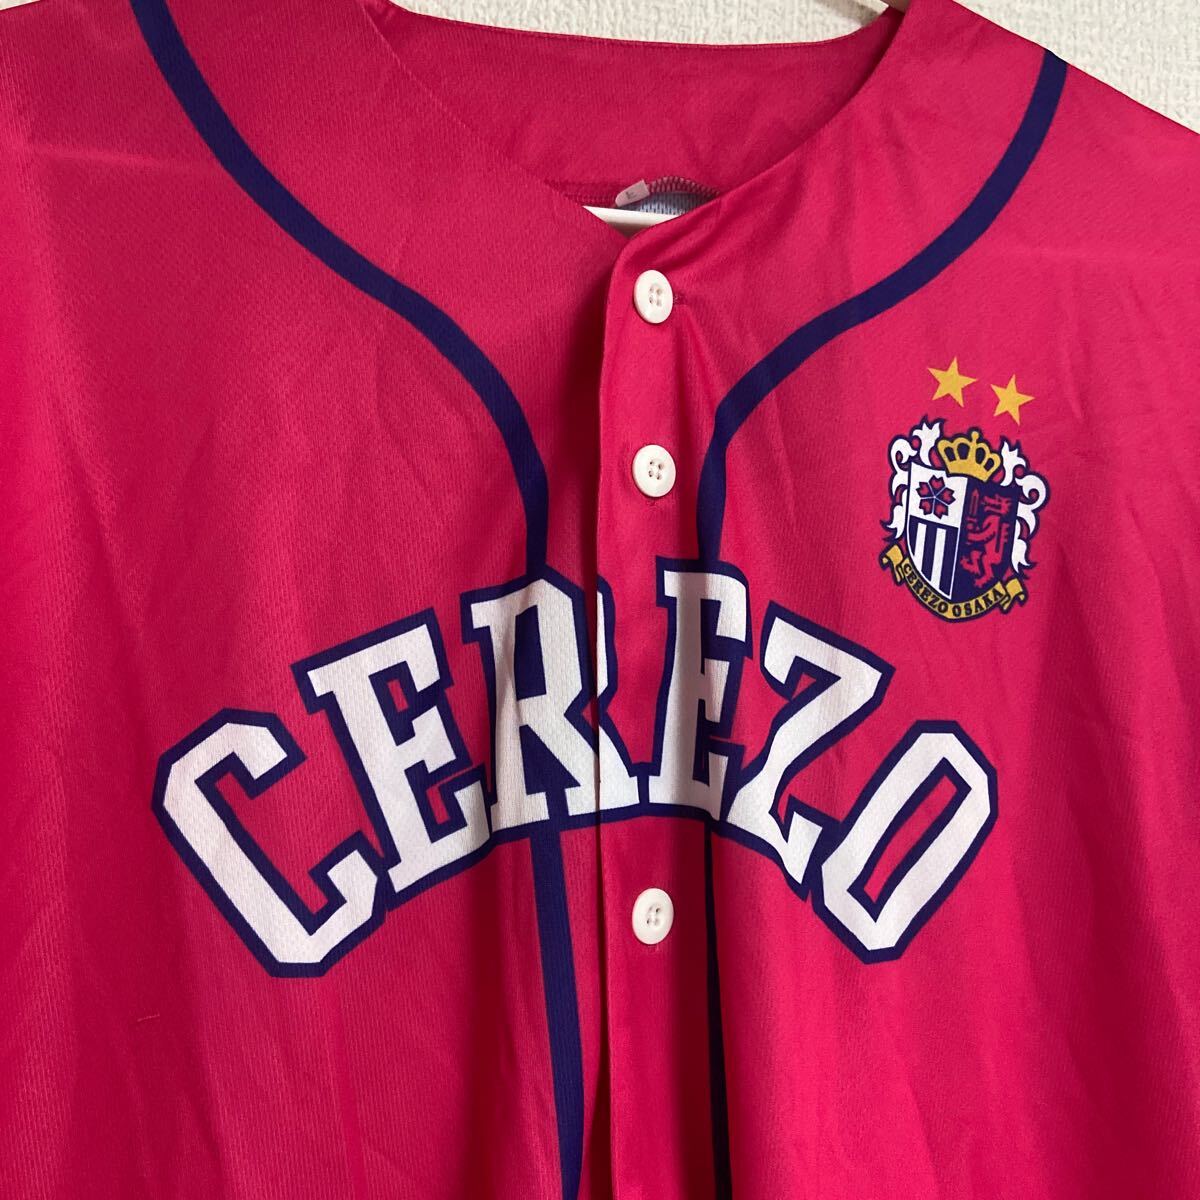 セレッソ大阪 ベースボールシャツ 非売品 フリーサイズ の画像1